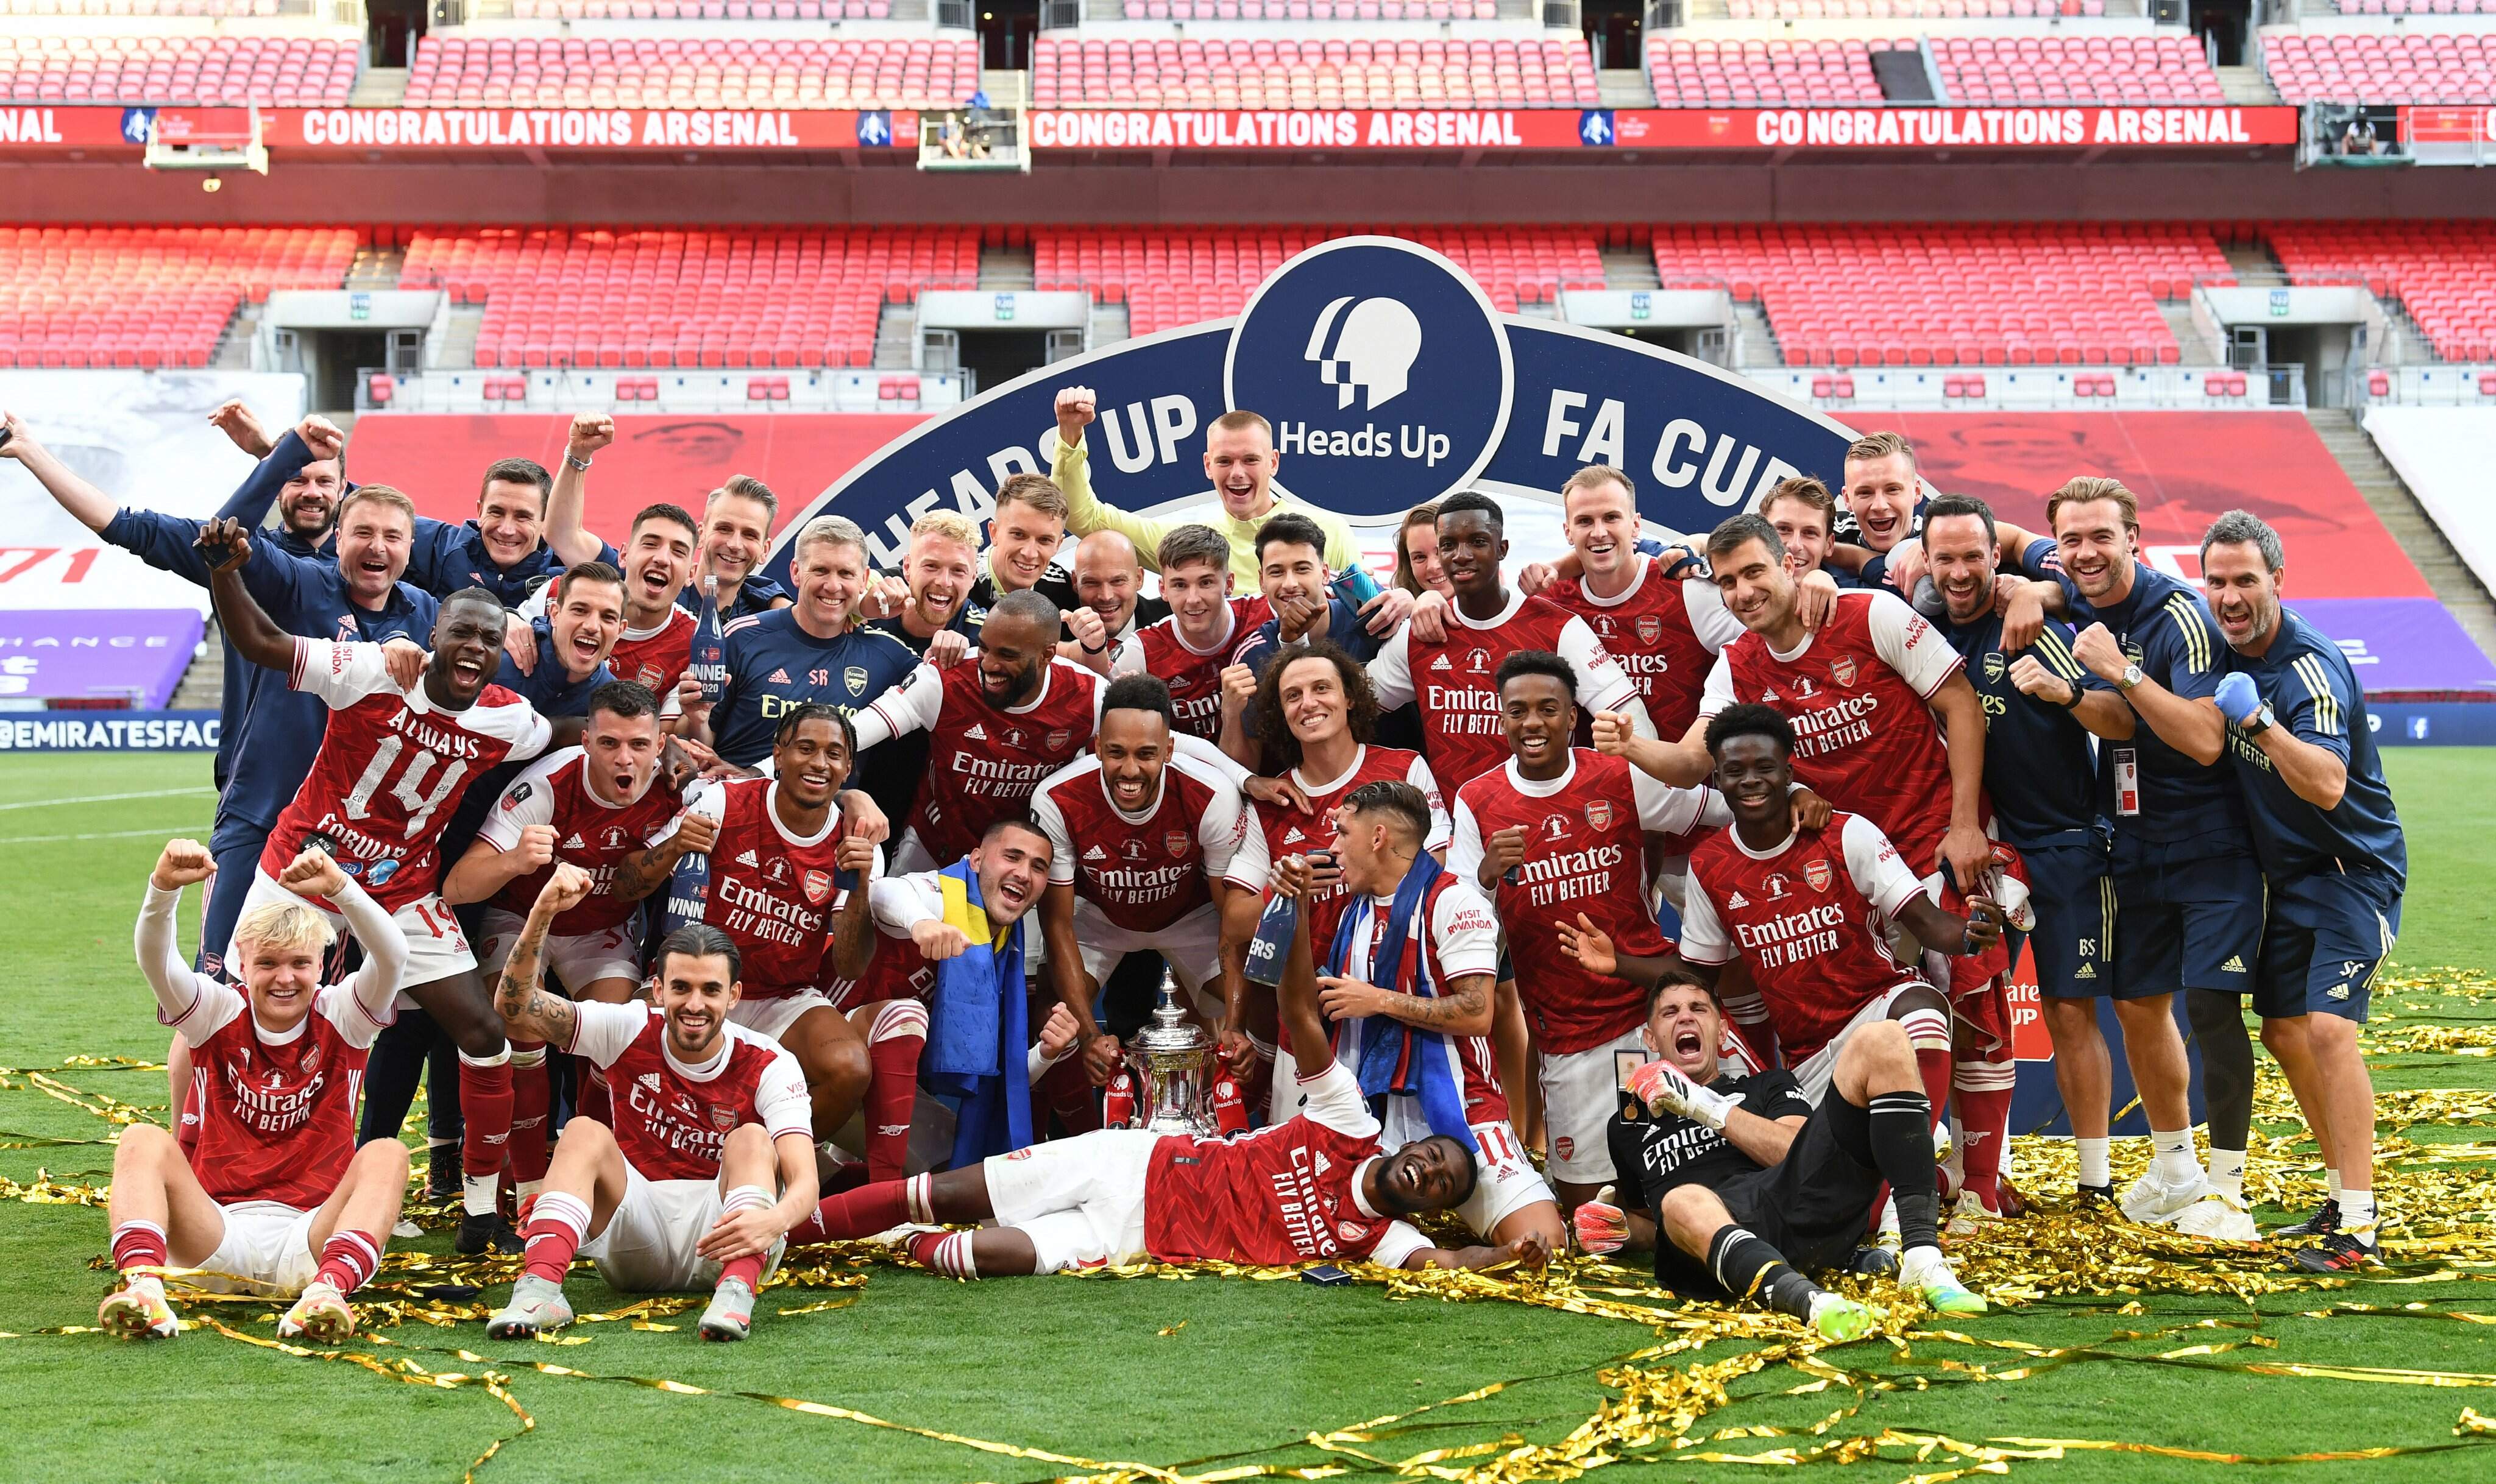 Arsenal conquistou a Copa da Inglaterra pela 14ª vez em sua história